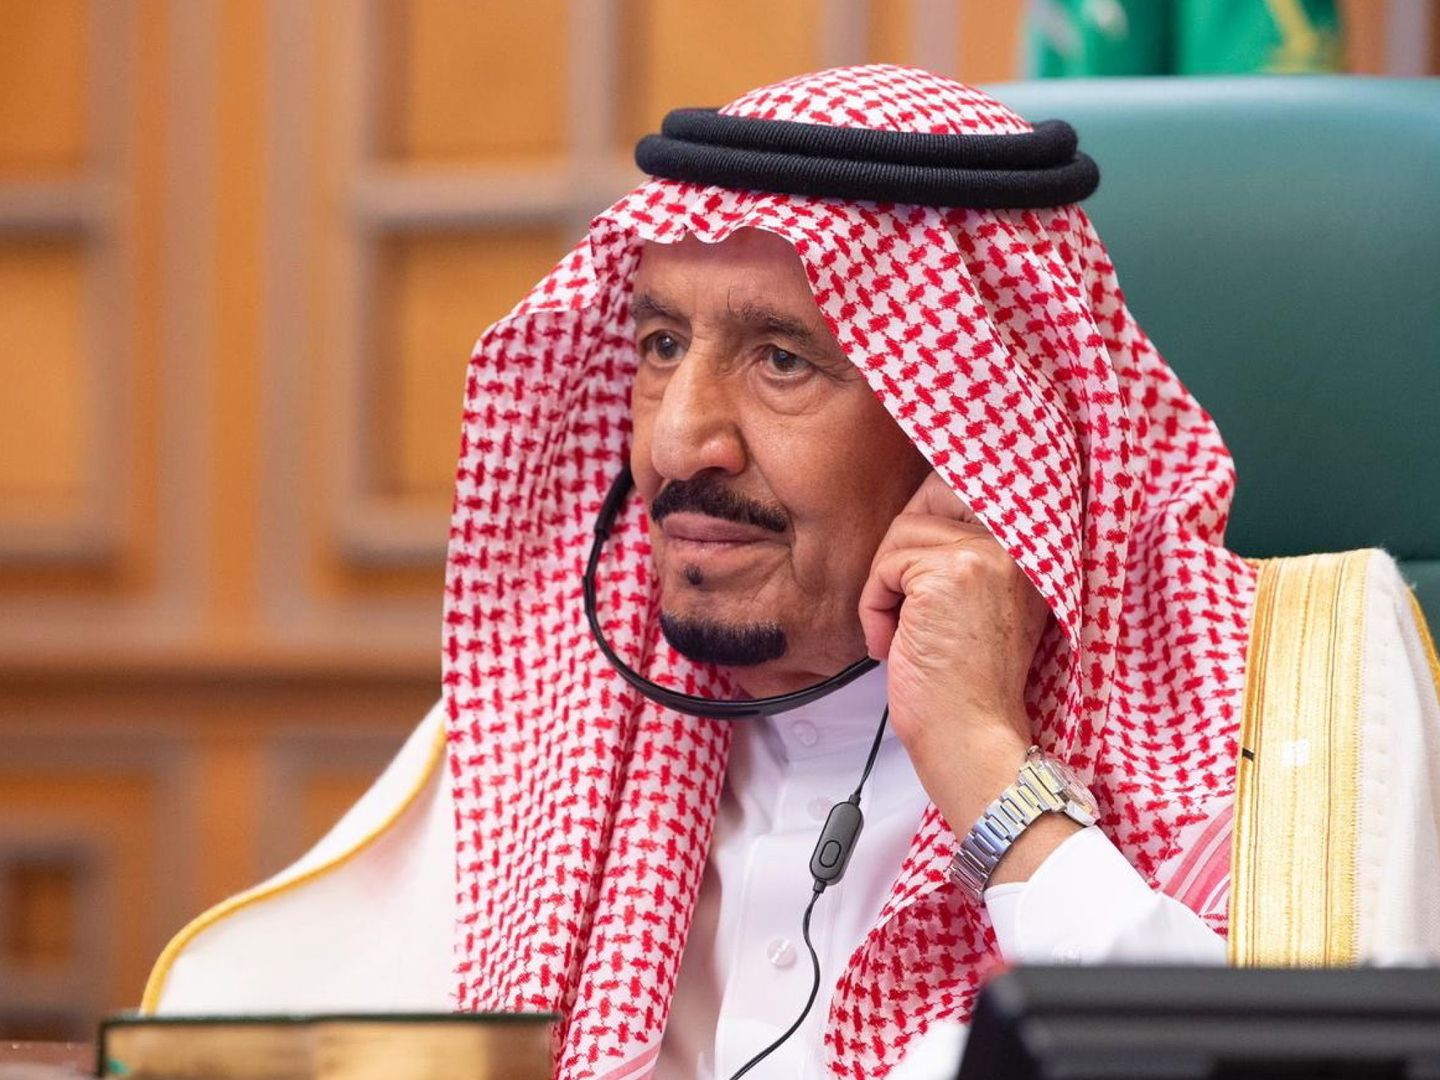 El rey de Arabia Saudita, Salman bin Abdulaziz el pasado 26 de marzo. (Efe)